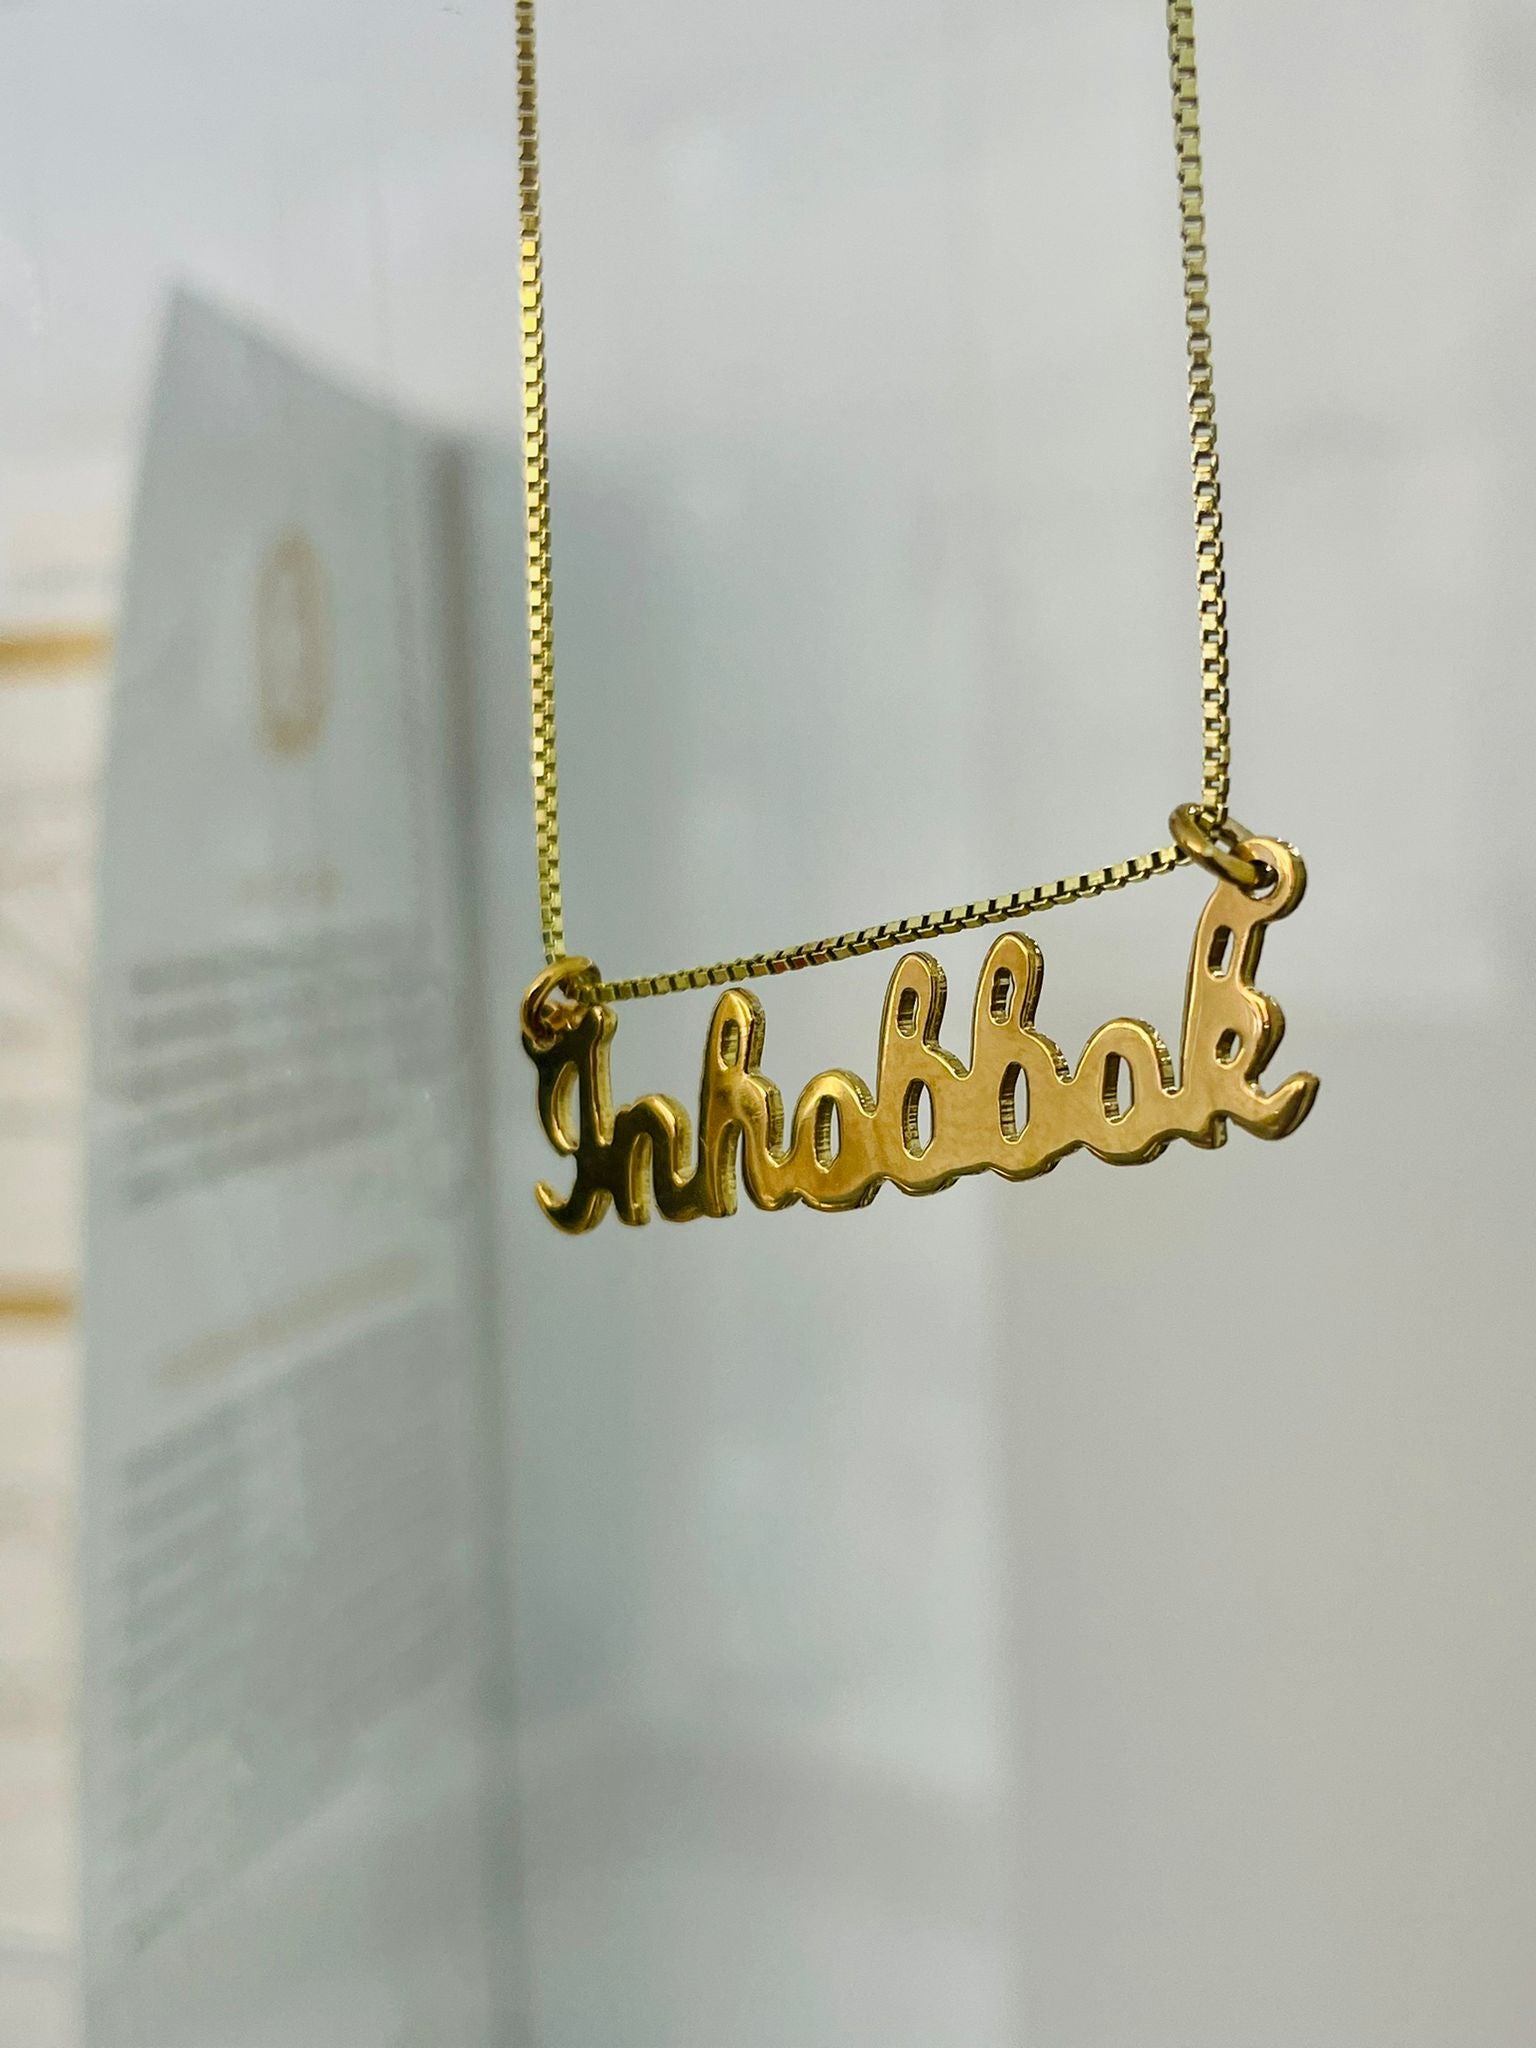 Inhobbok (handwritten) Necklace